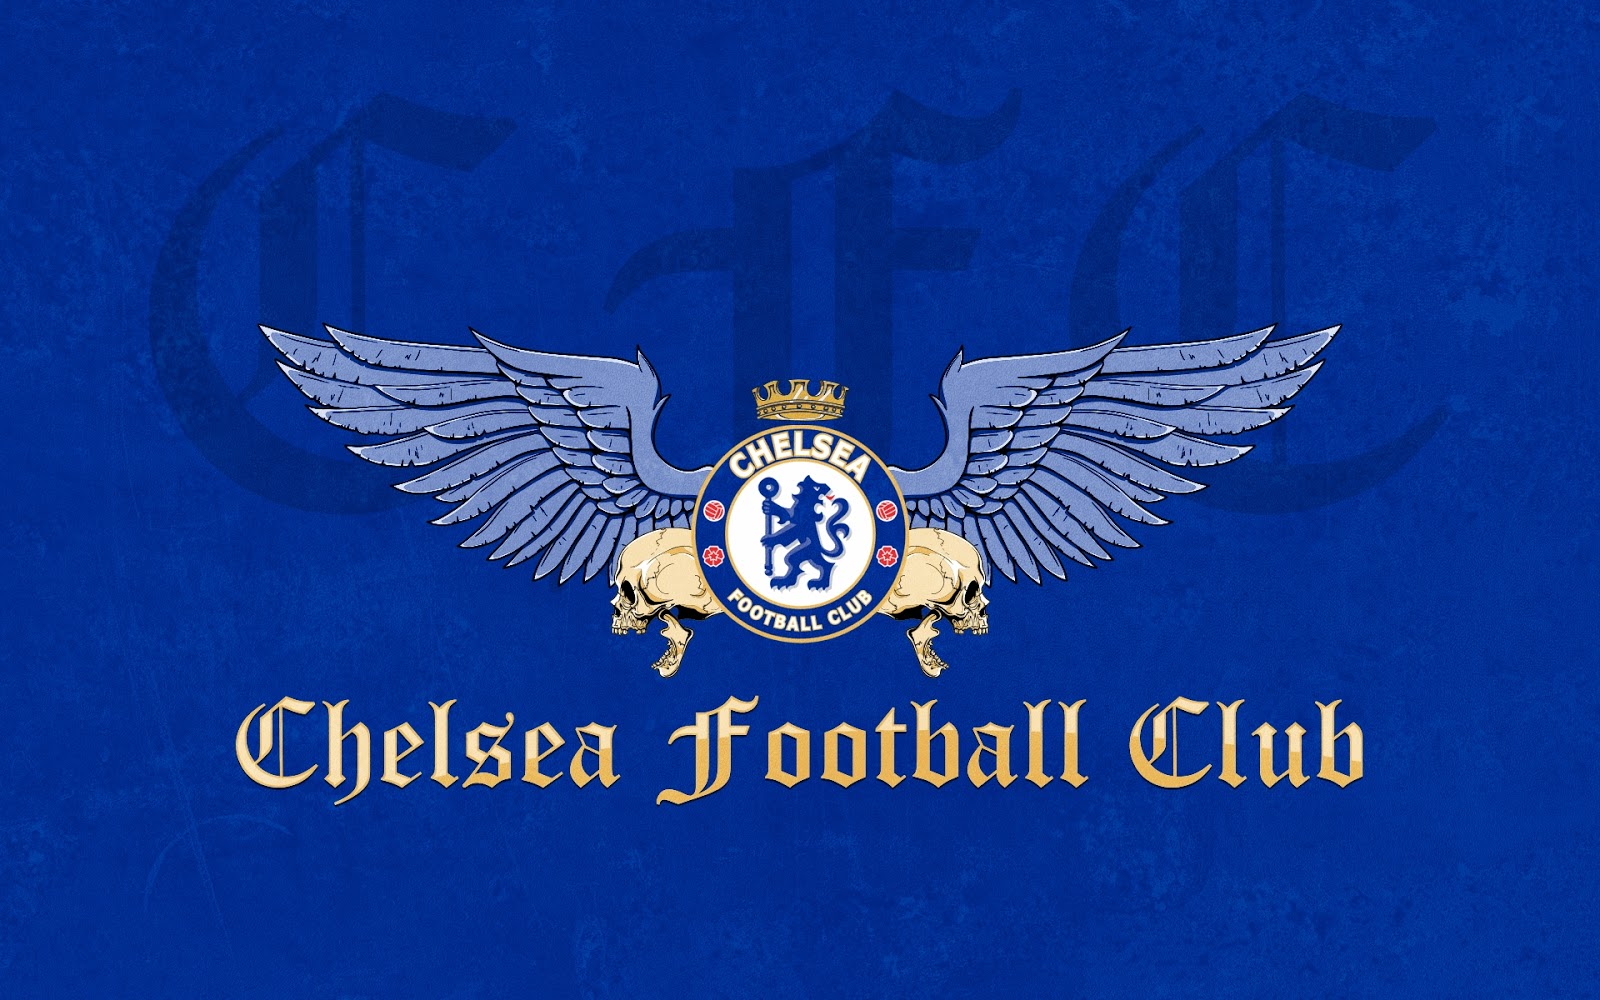 gambar the blues chelsea lengkap chelsea football club adalah sebuah